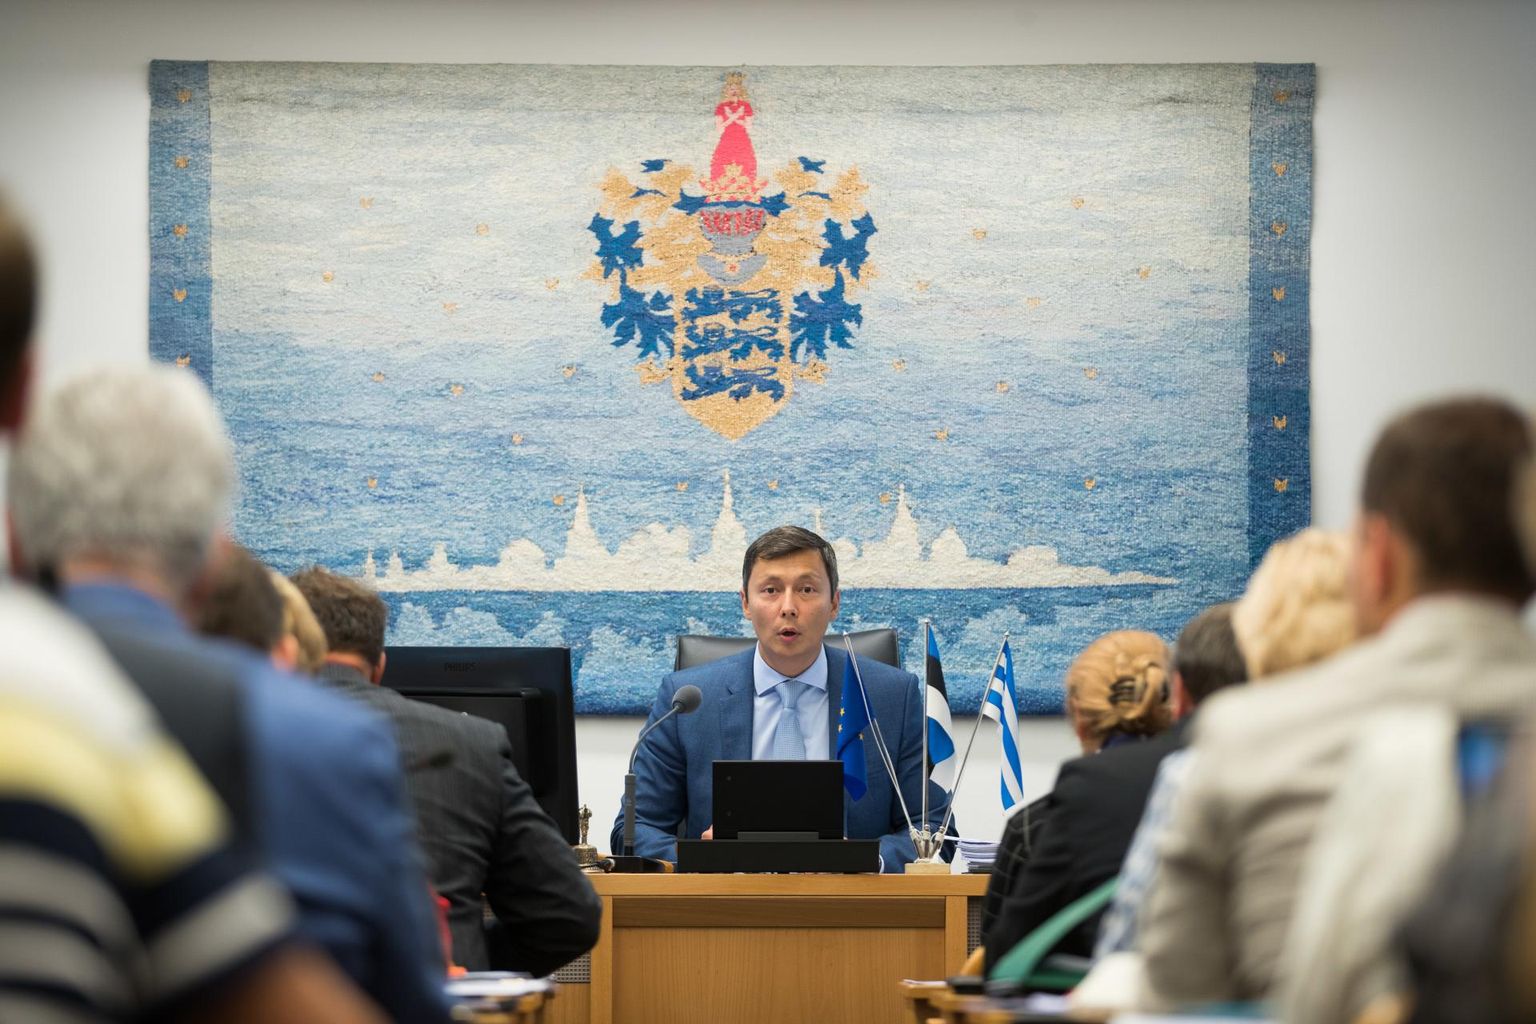 Tallinna linnavolikogu esimees Mihhail Kõlvart tuli välja ettepanekuga vähendada linnavolikogu liikmete arvu 79-lt 63-le.